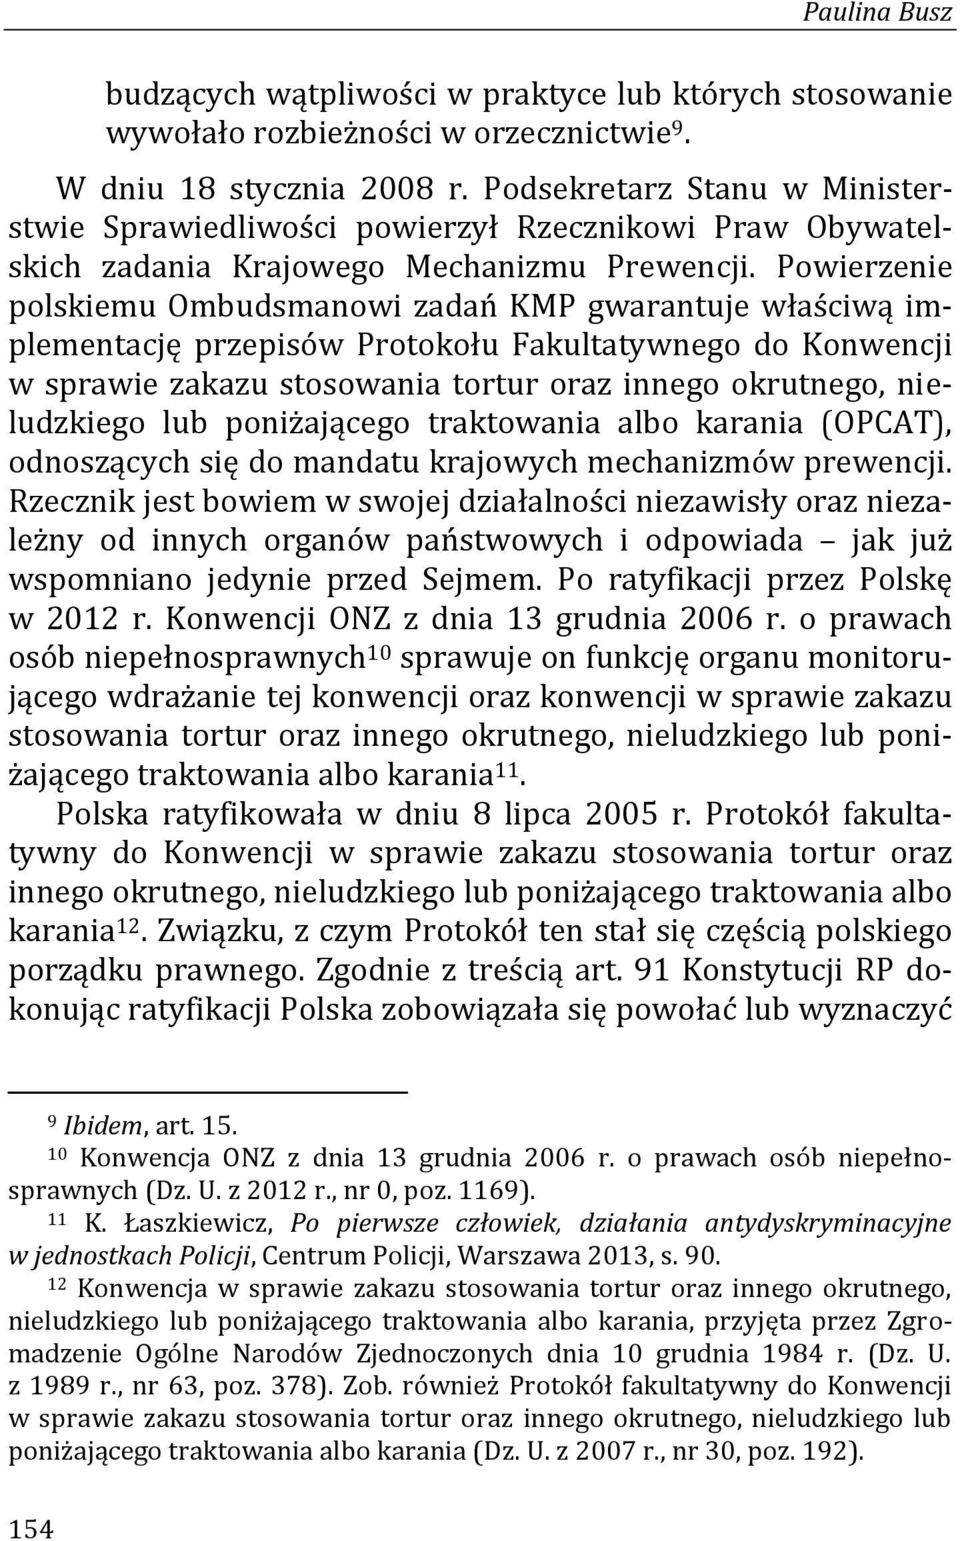 Powierzenie polskiemu Ombudsmanowi zadań KMP gwarantuje właściwą implementację przepisów Protokołu Fakultatywnego do Konwencji w sprawie zakazu stosowania tortur oraz innego okrutnego, nieludzkiego